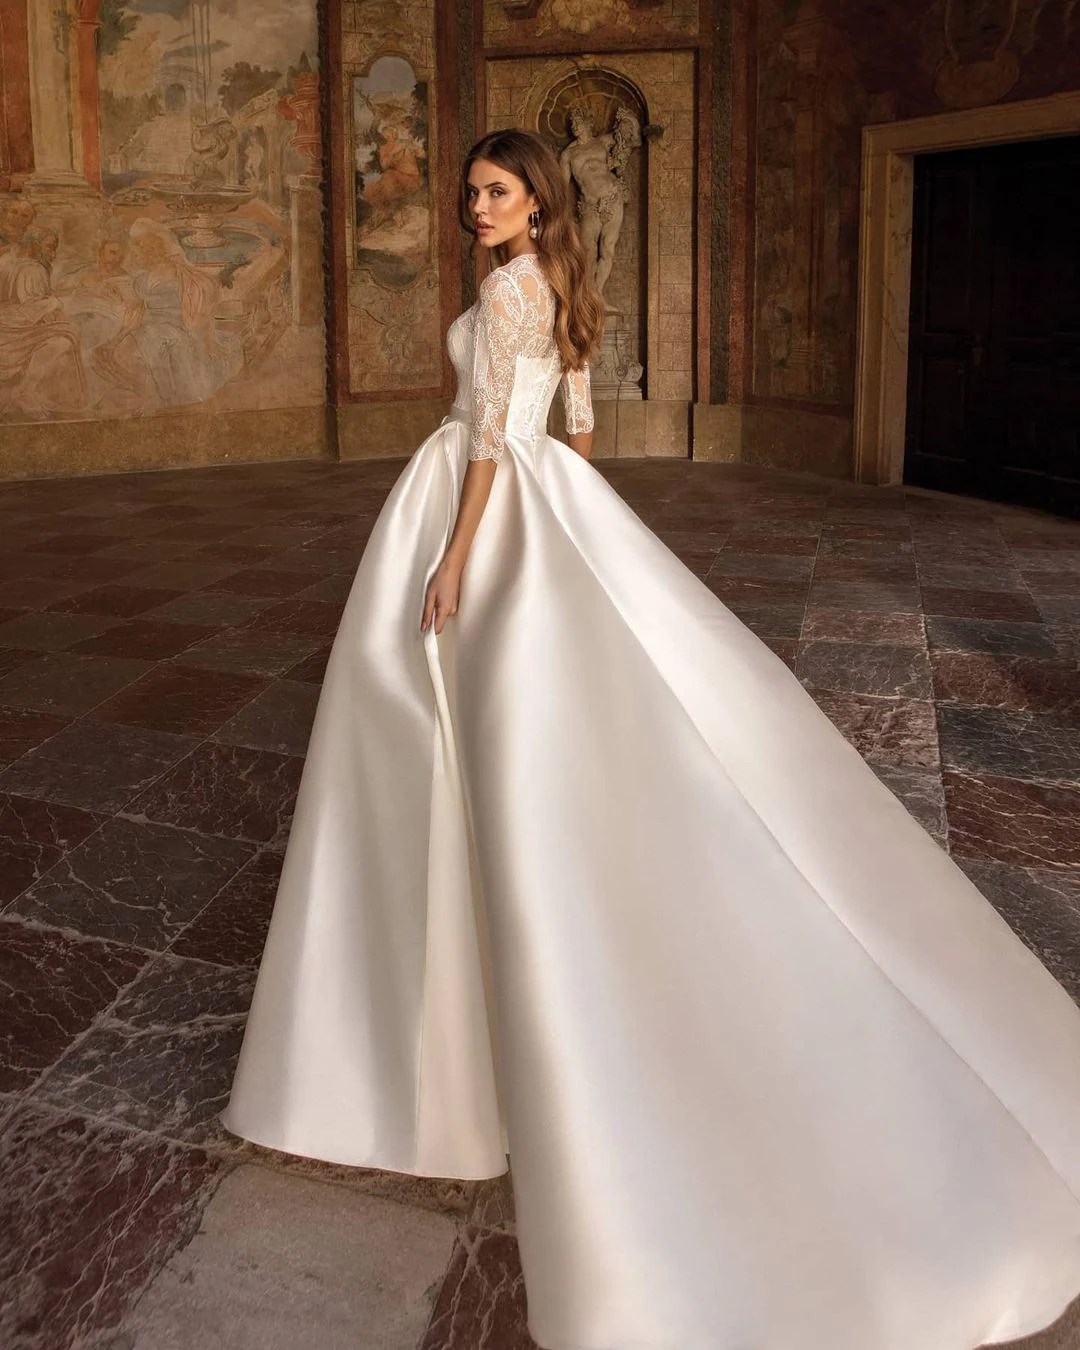 Iconic elegant celebrity wedding dresses of 2021 | Melody Jacob